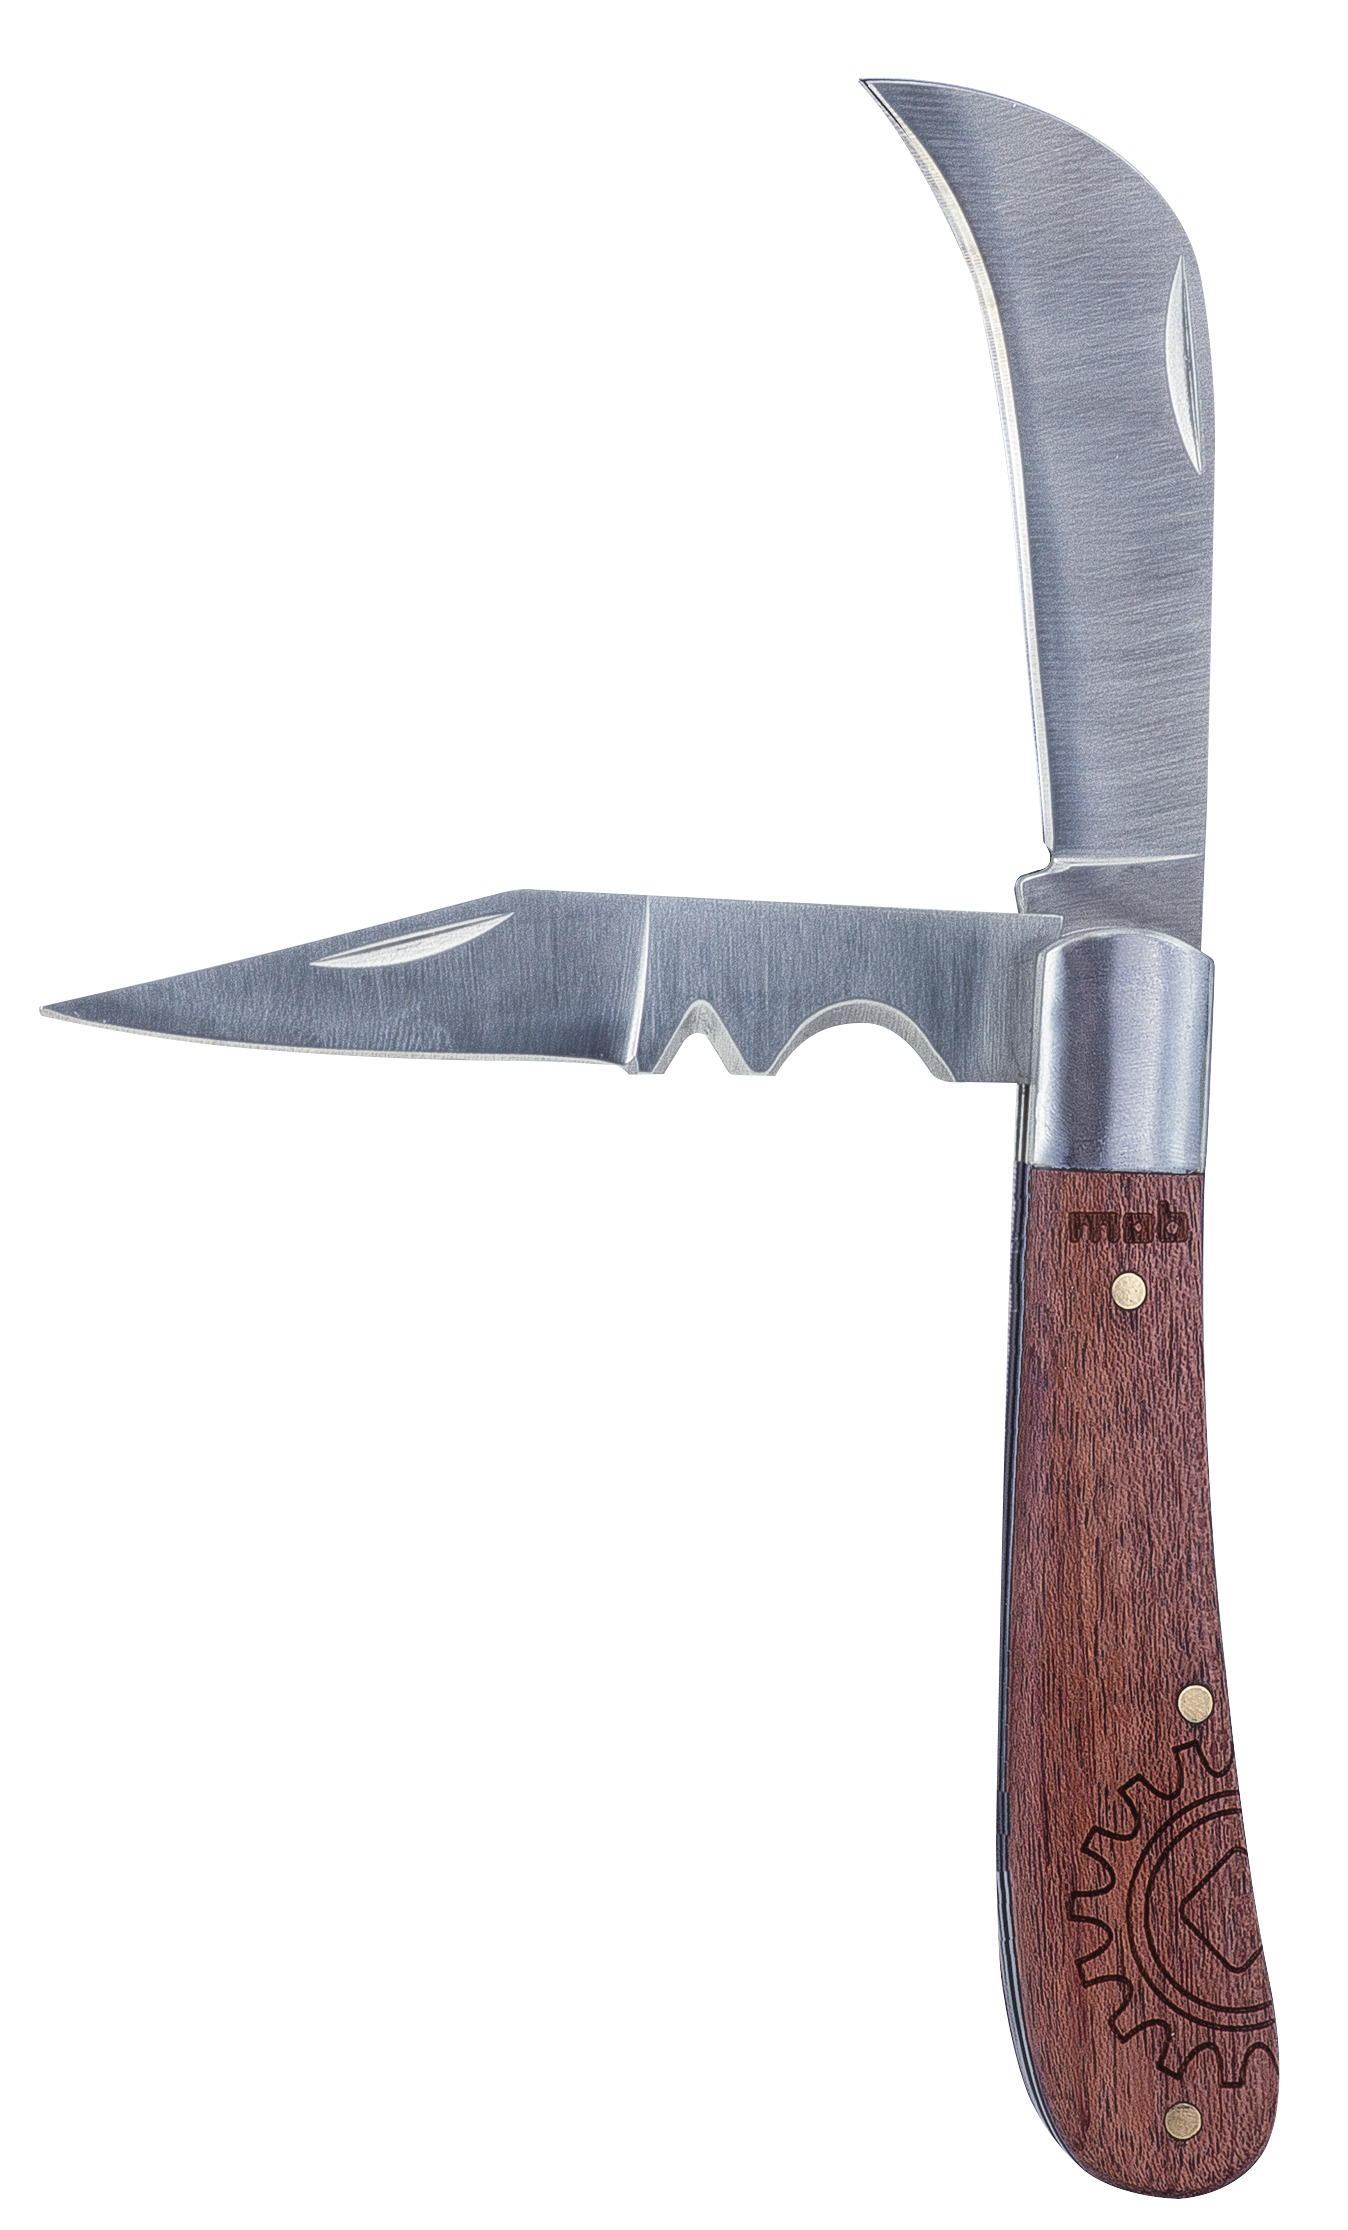 Couteaux à éplucher - Manche bois - Lames courbées en acier inoxydable -  Lot de 2